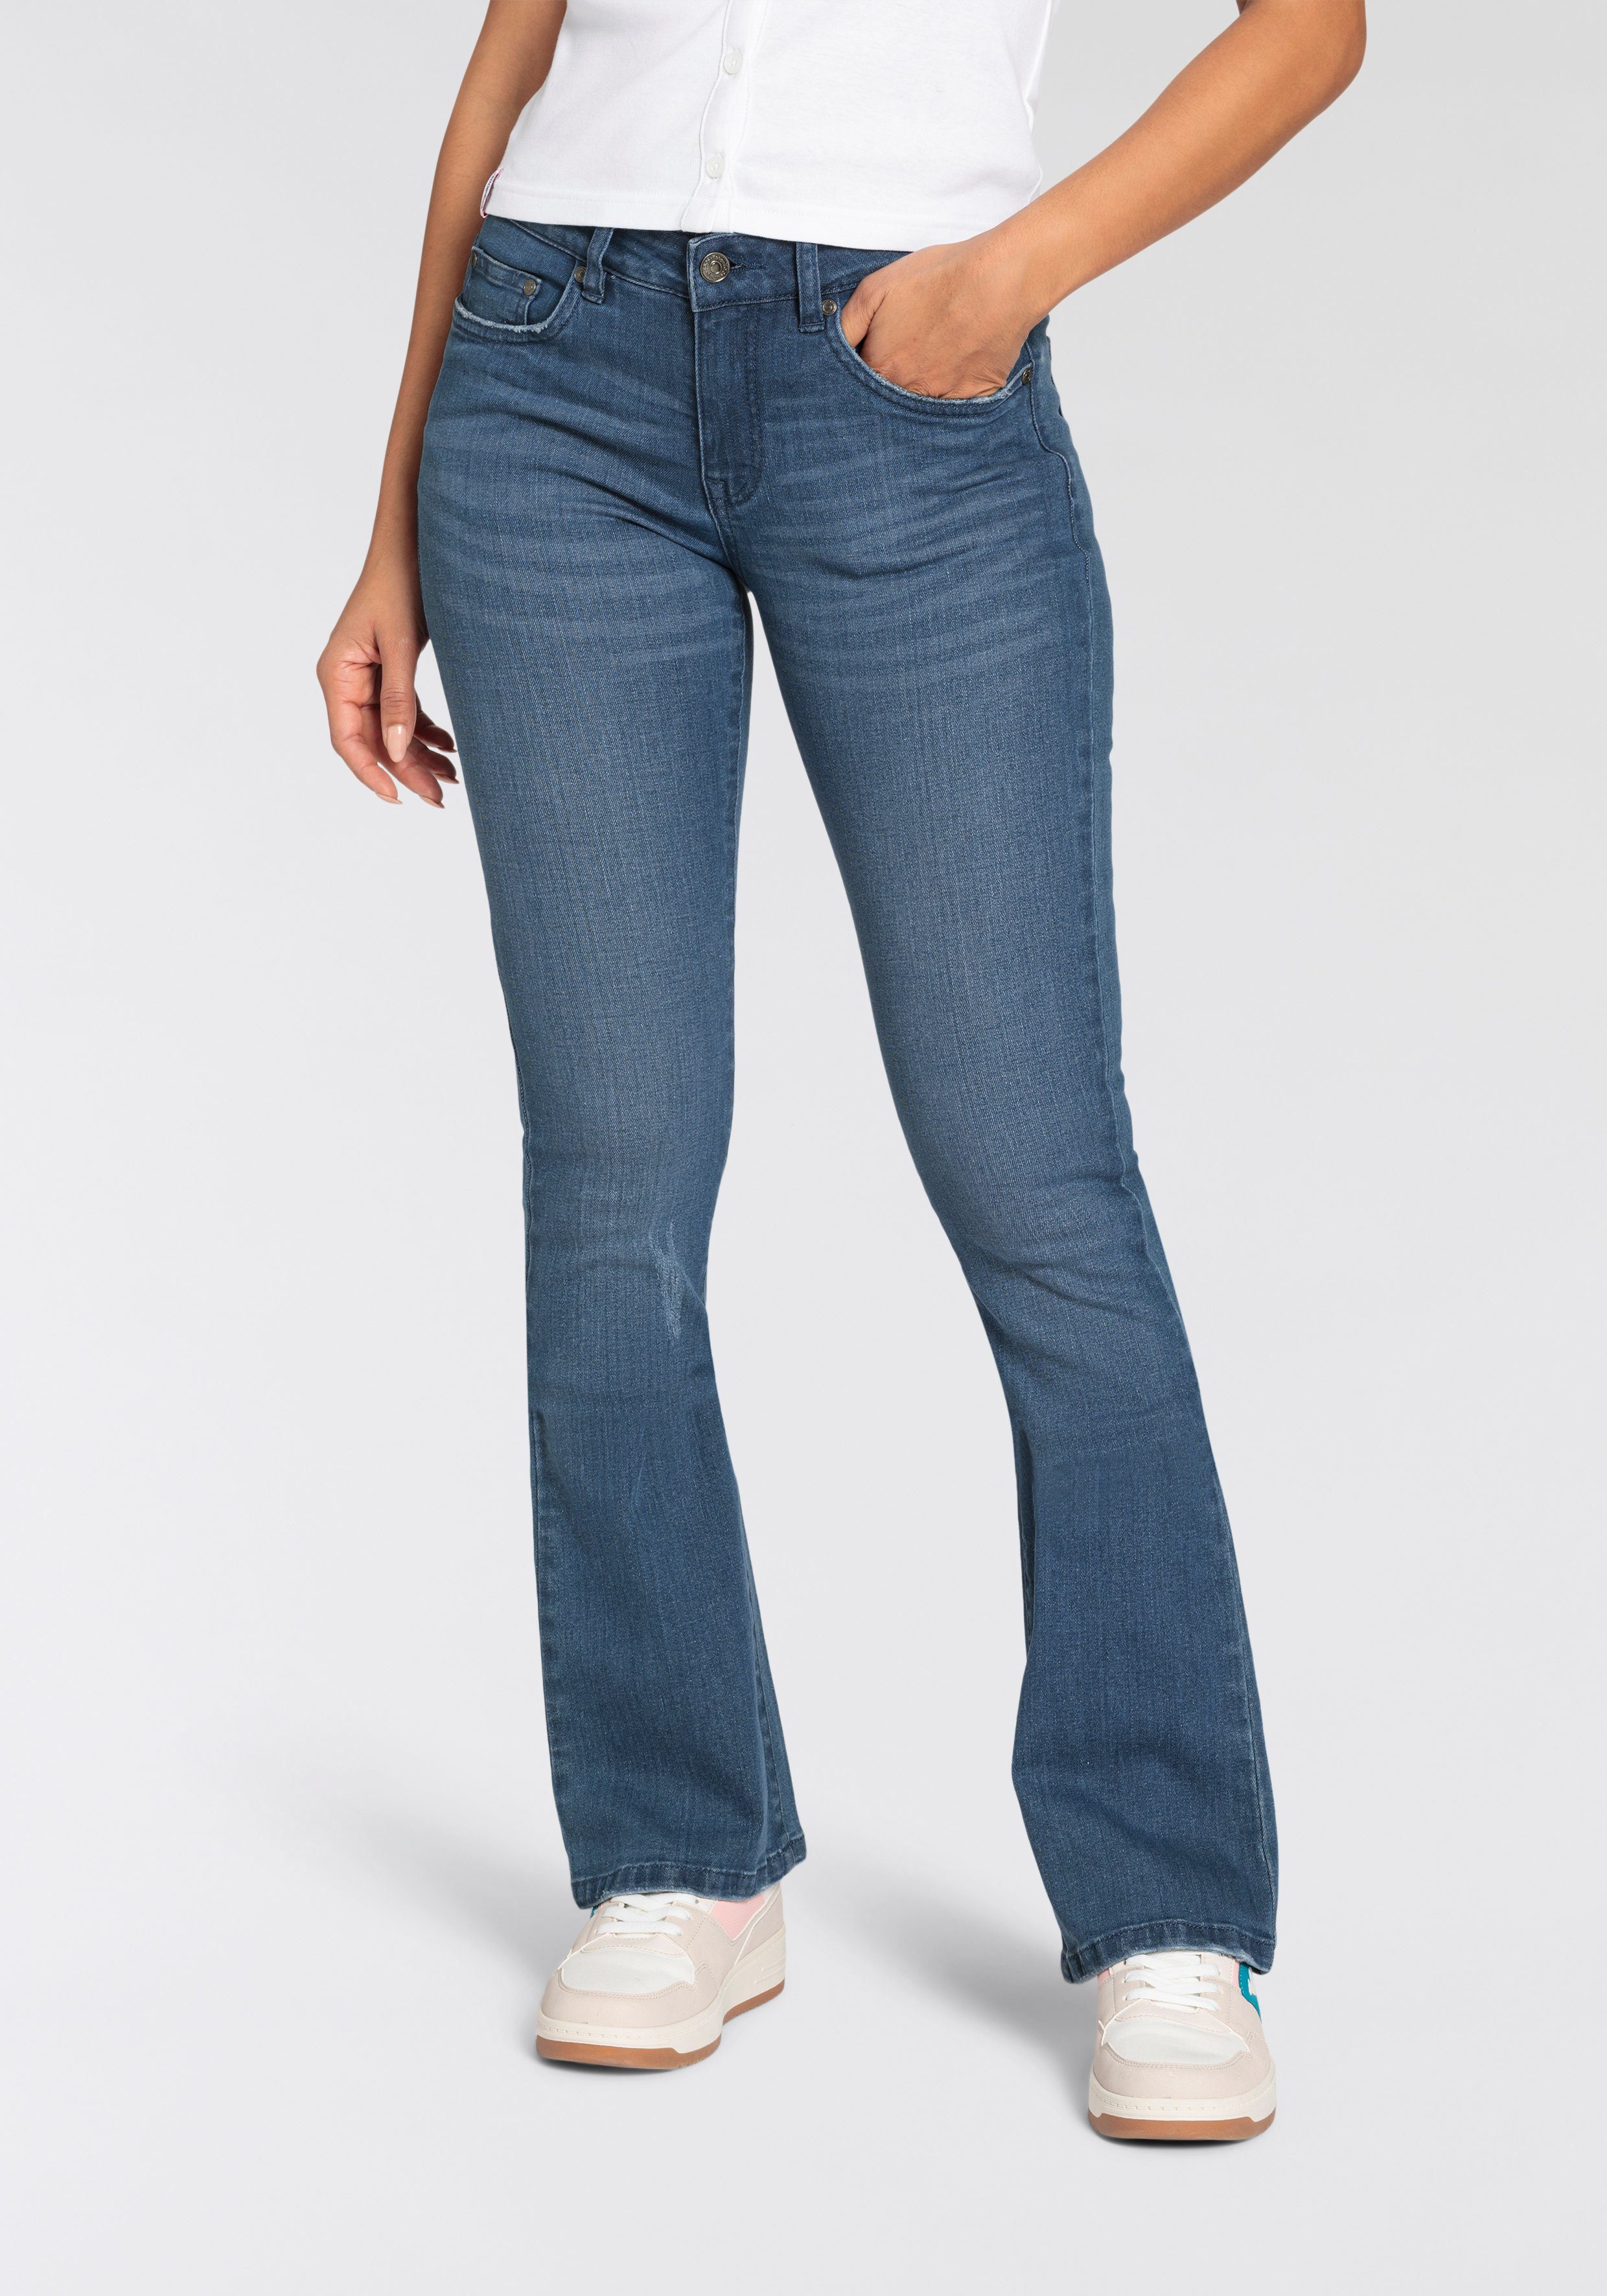 KangaROOS 5-pocket jeans